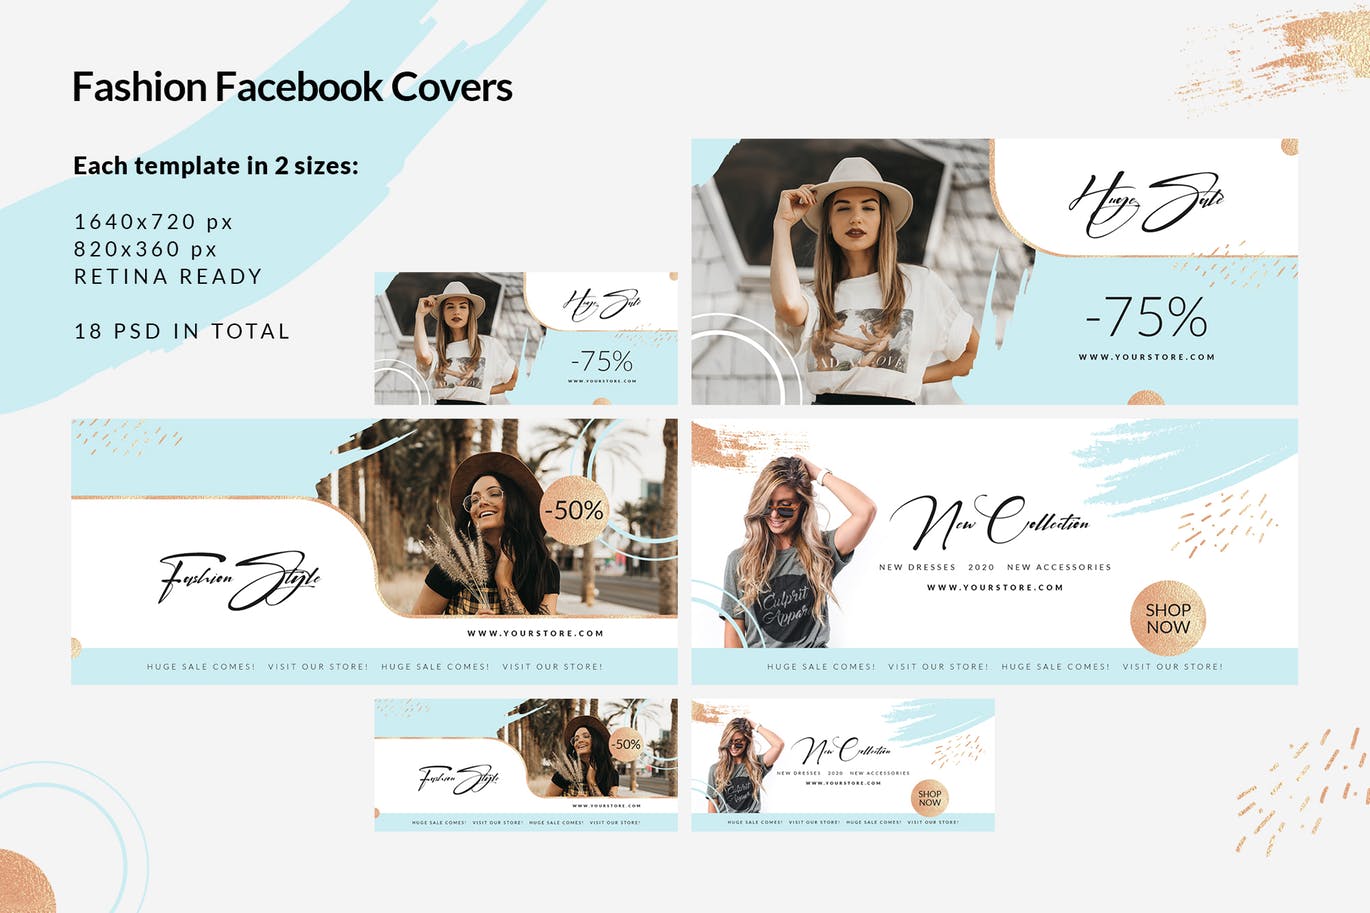 时尚品牌打折促销Facebook封面设计模板普贤居精选 Fashion Facebook Covers插图(1)